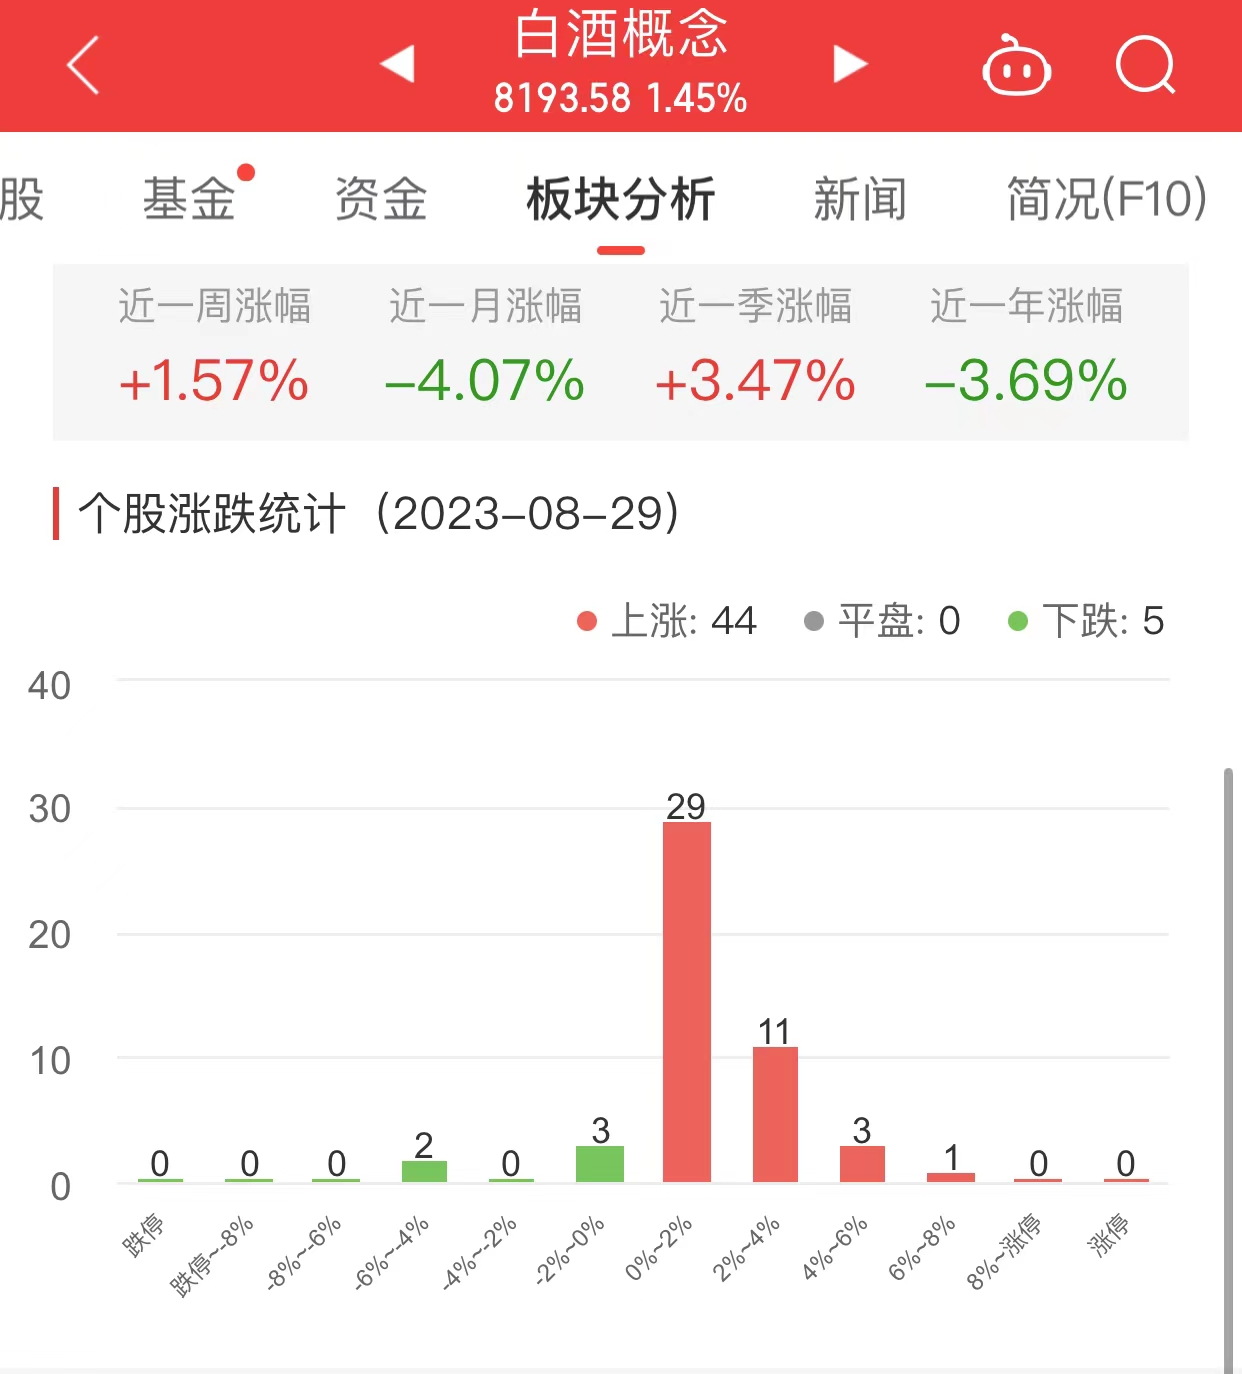 白酒概念板块涨1.45% 吉宏股份涨6.01%居首